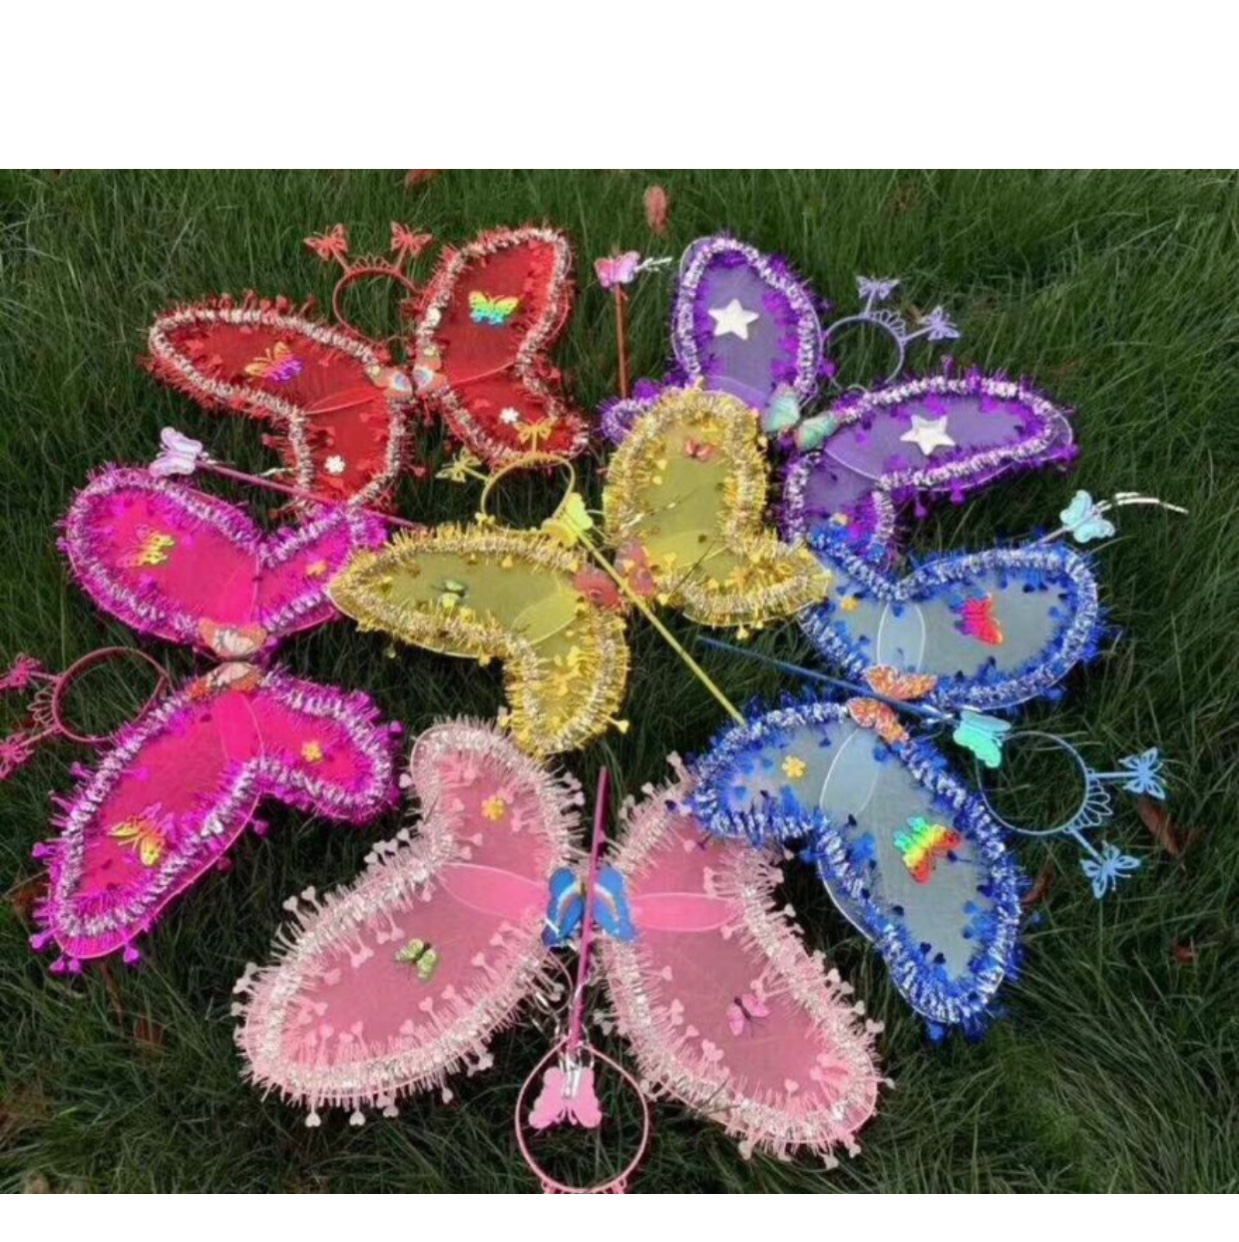 地摊热销发光小玩具 闪亮翅膀设计 发光蝴蝶翅膀玩具 梦幻夜光儿童玩具